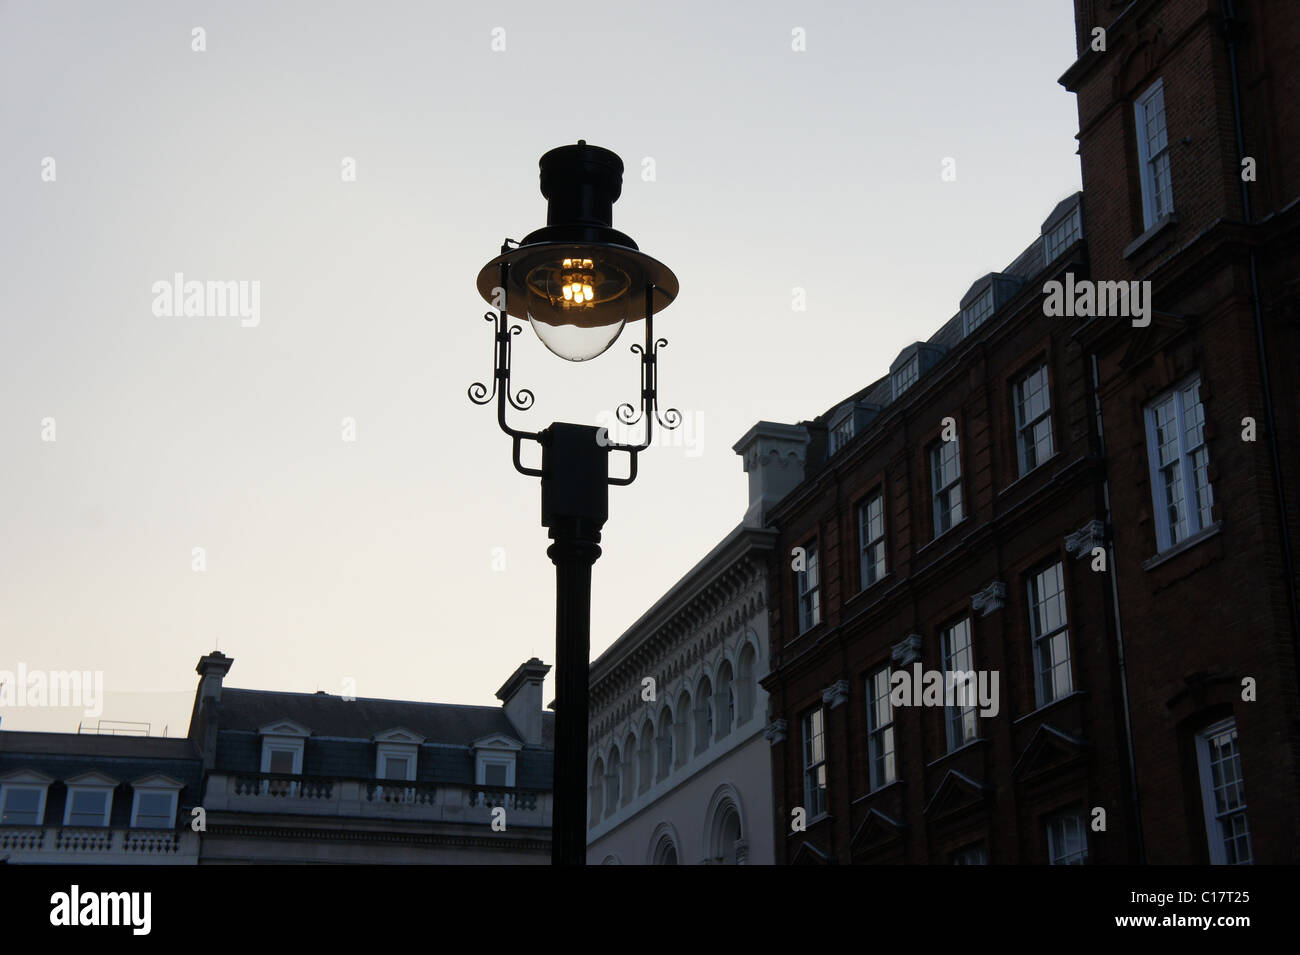 Street lamp in central London, UK Stock Photo